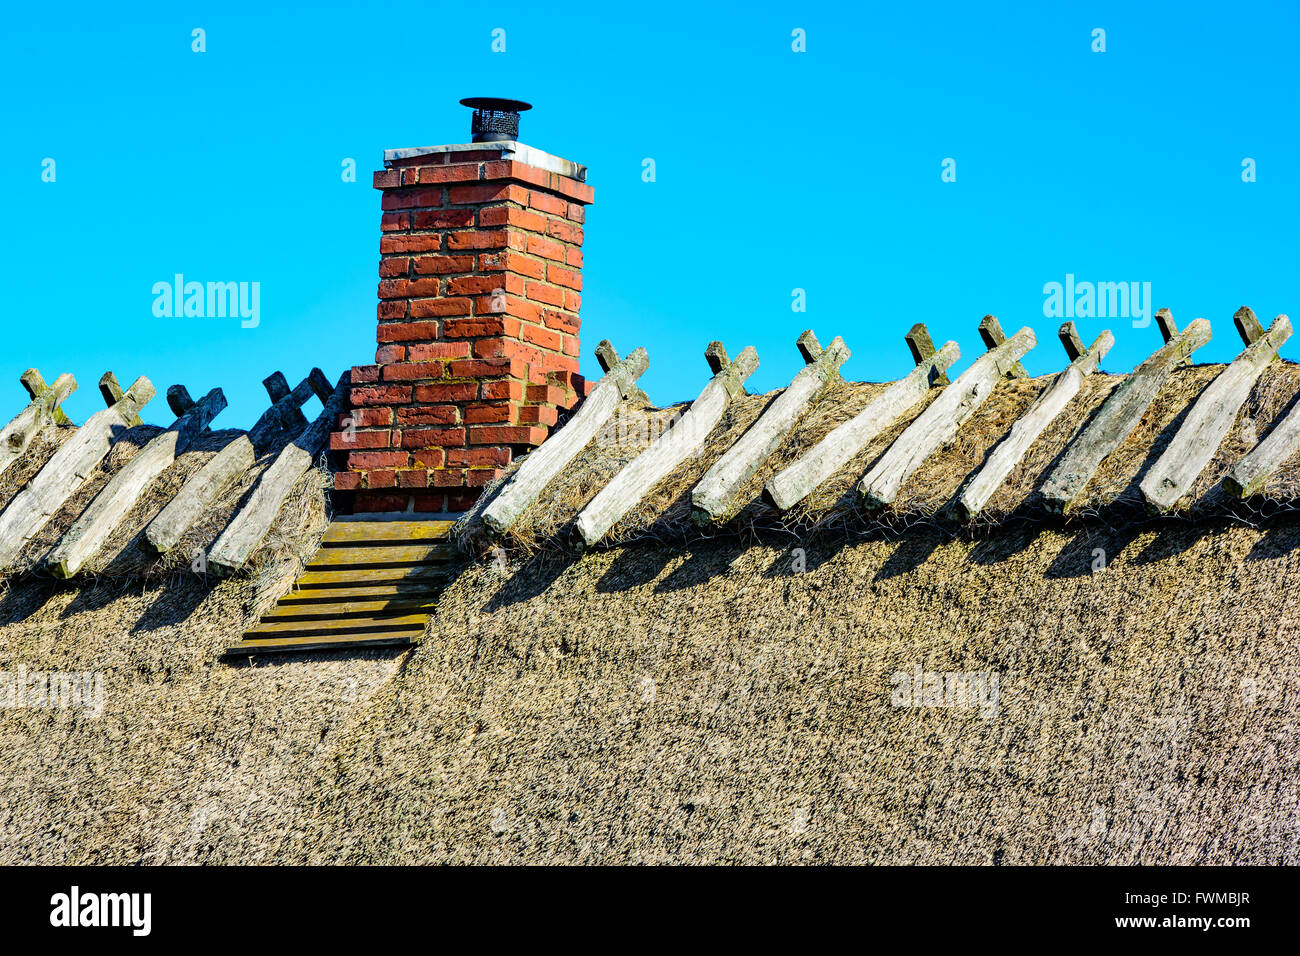 Stroh auf dem Dach mit einem alten Kamin vor einem blauen Himmel. Stockfoto